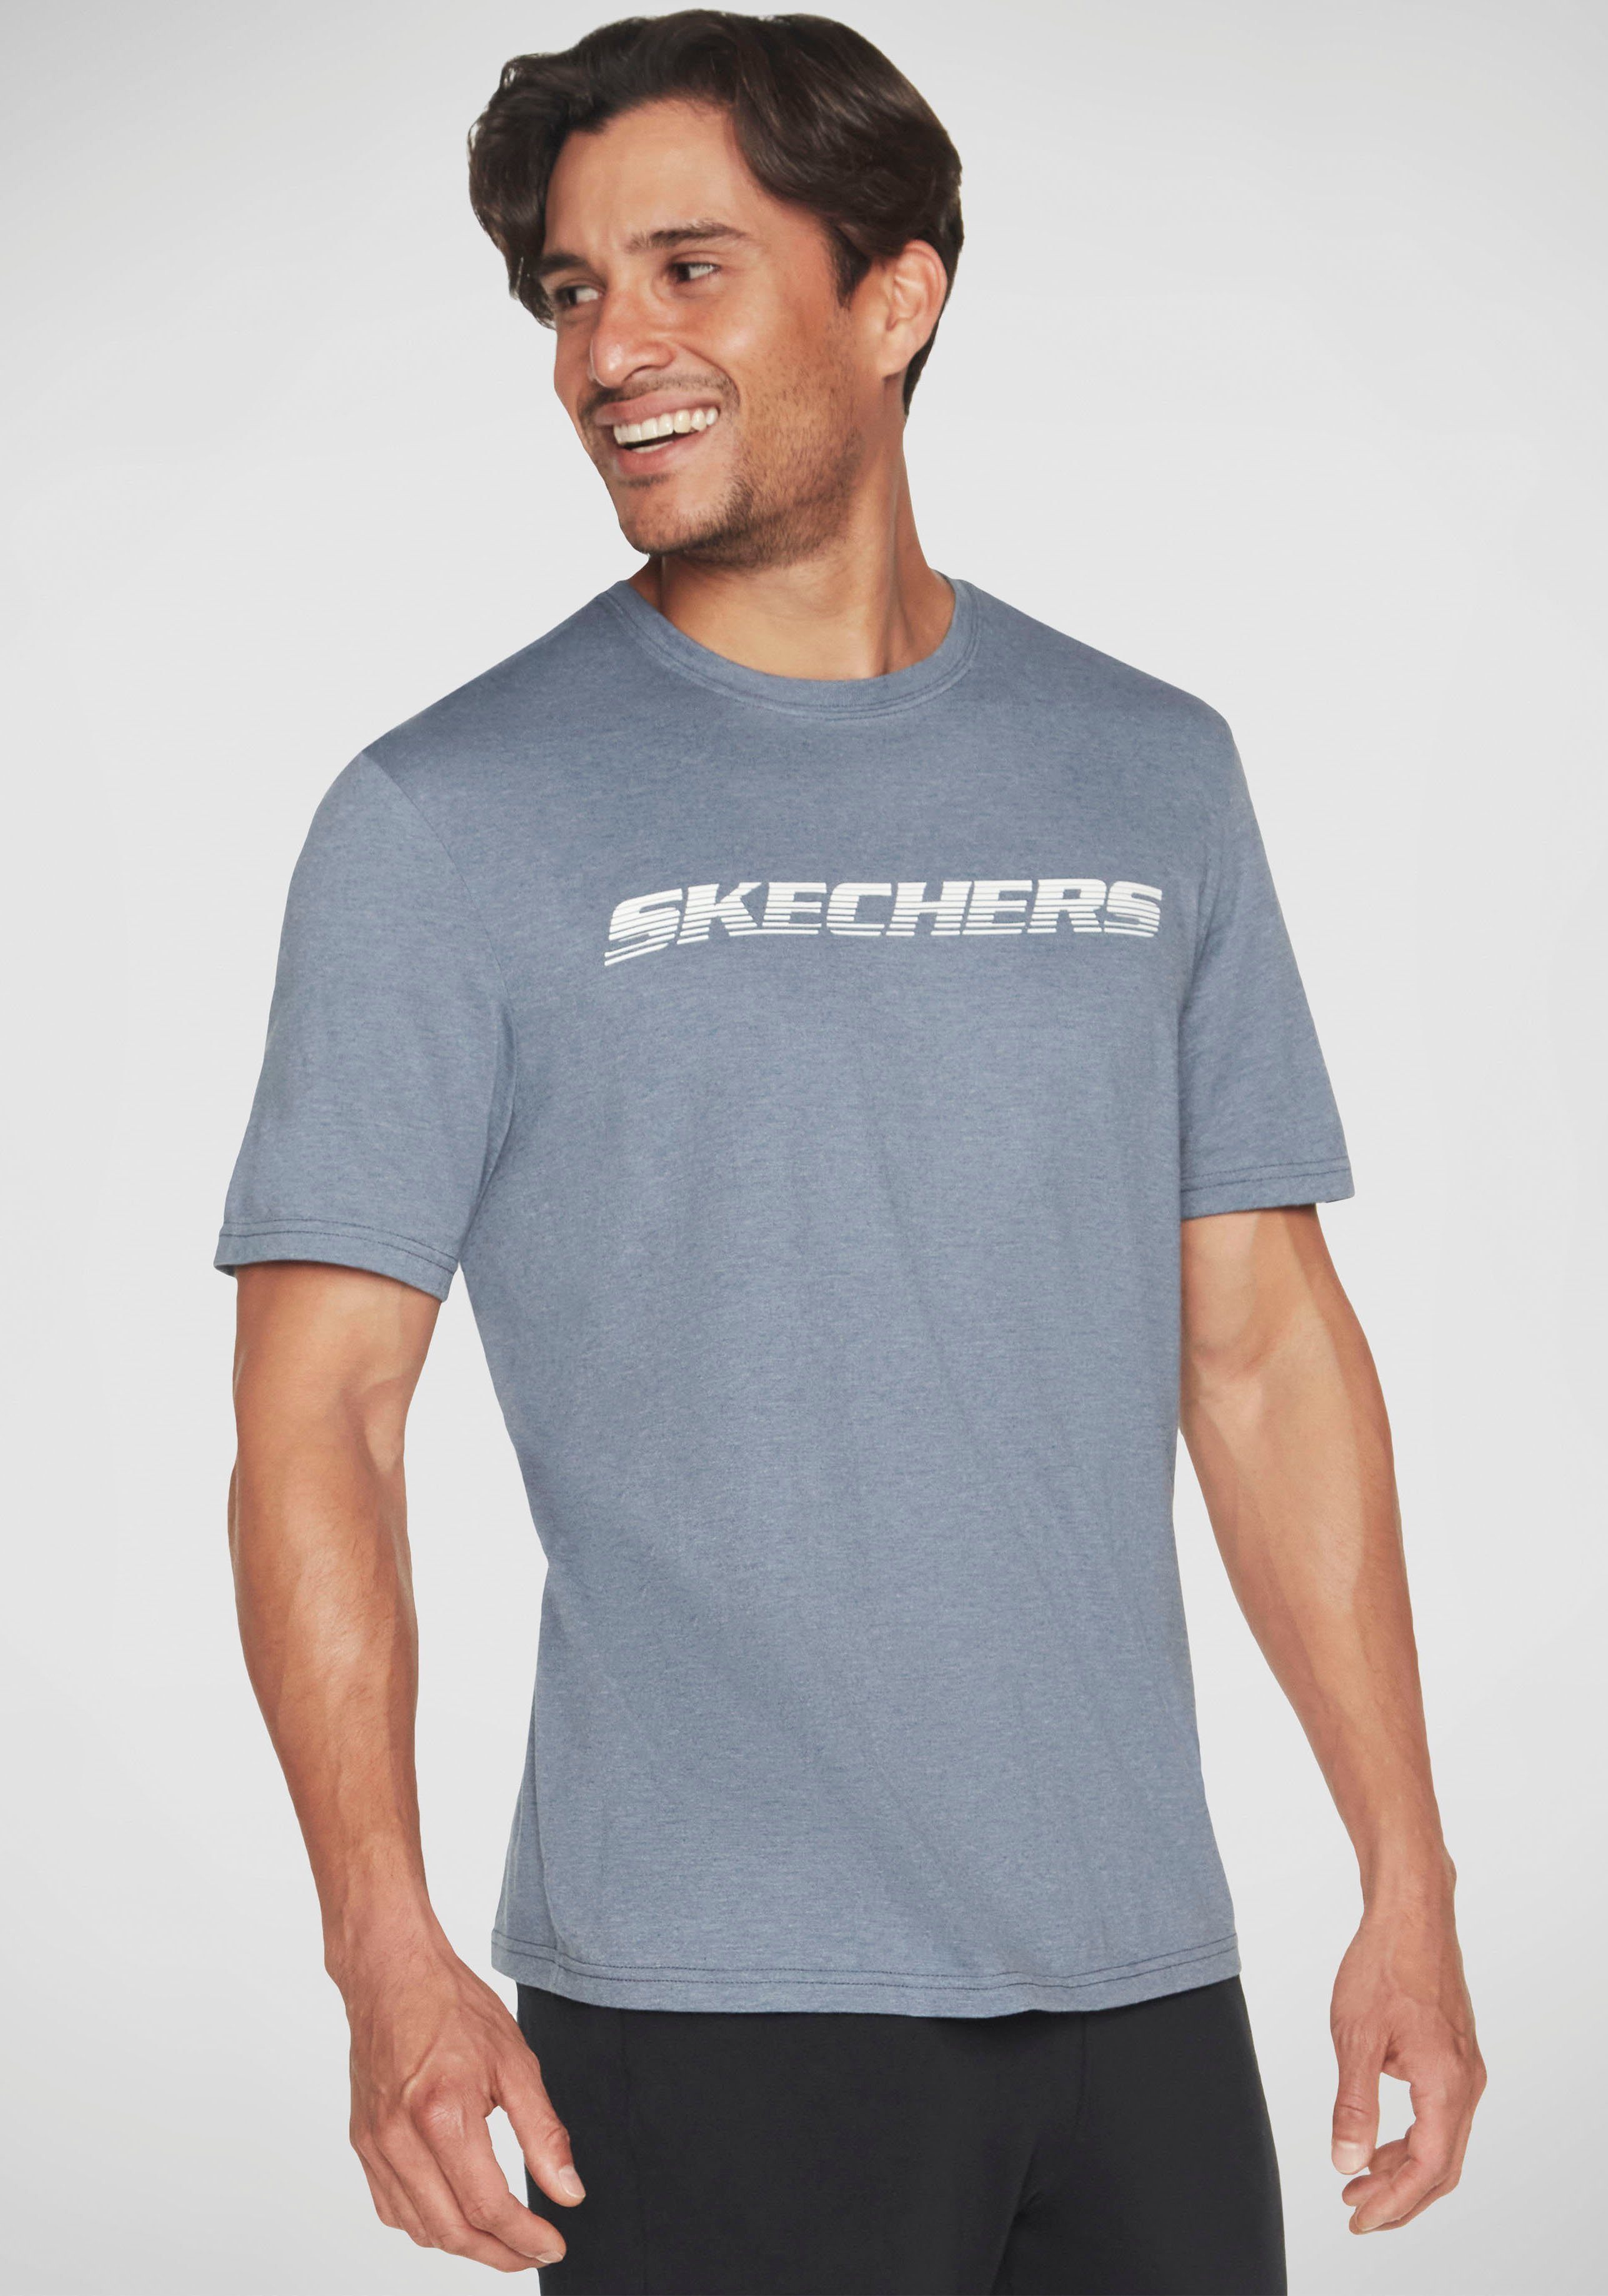 Skechers T-Shirt MOTION TEE blaugrau